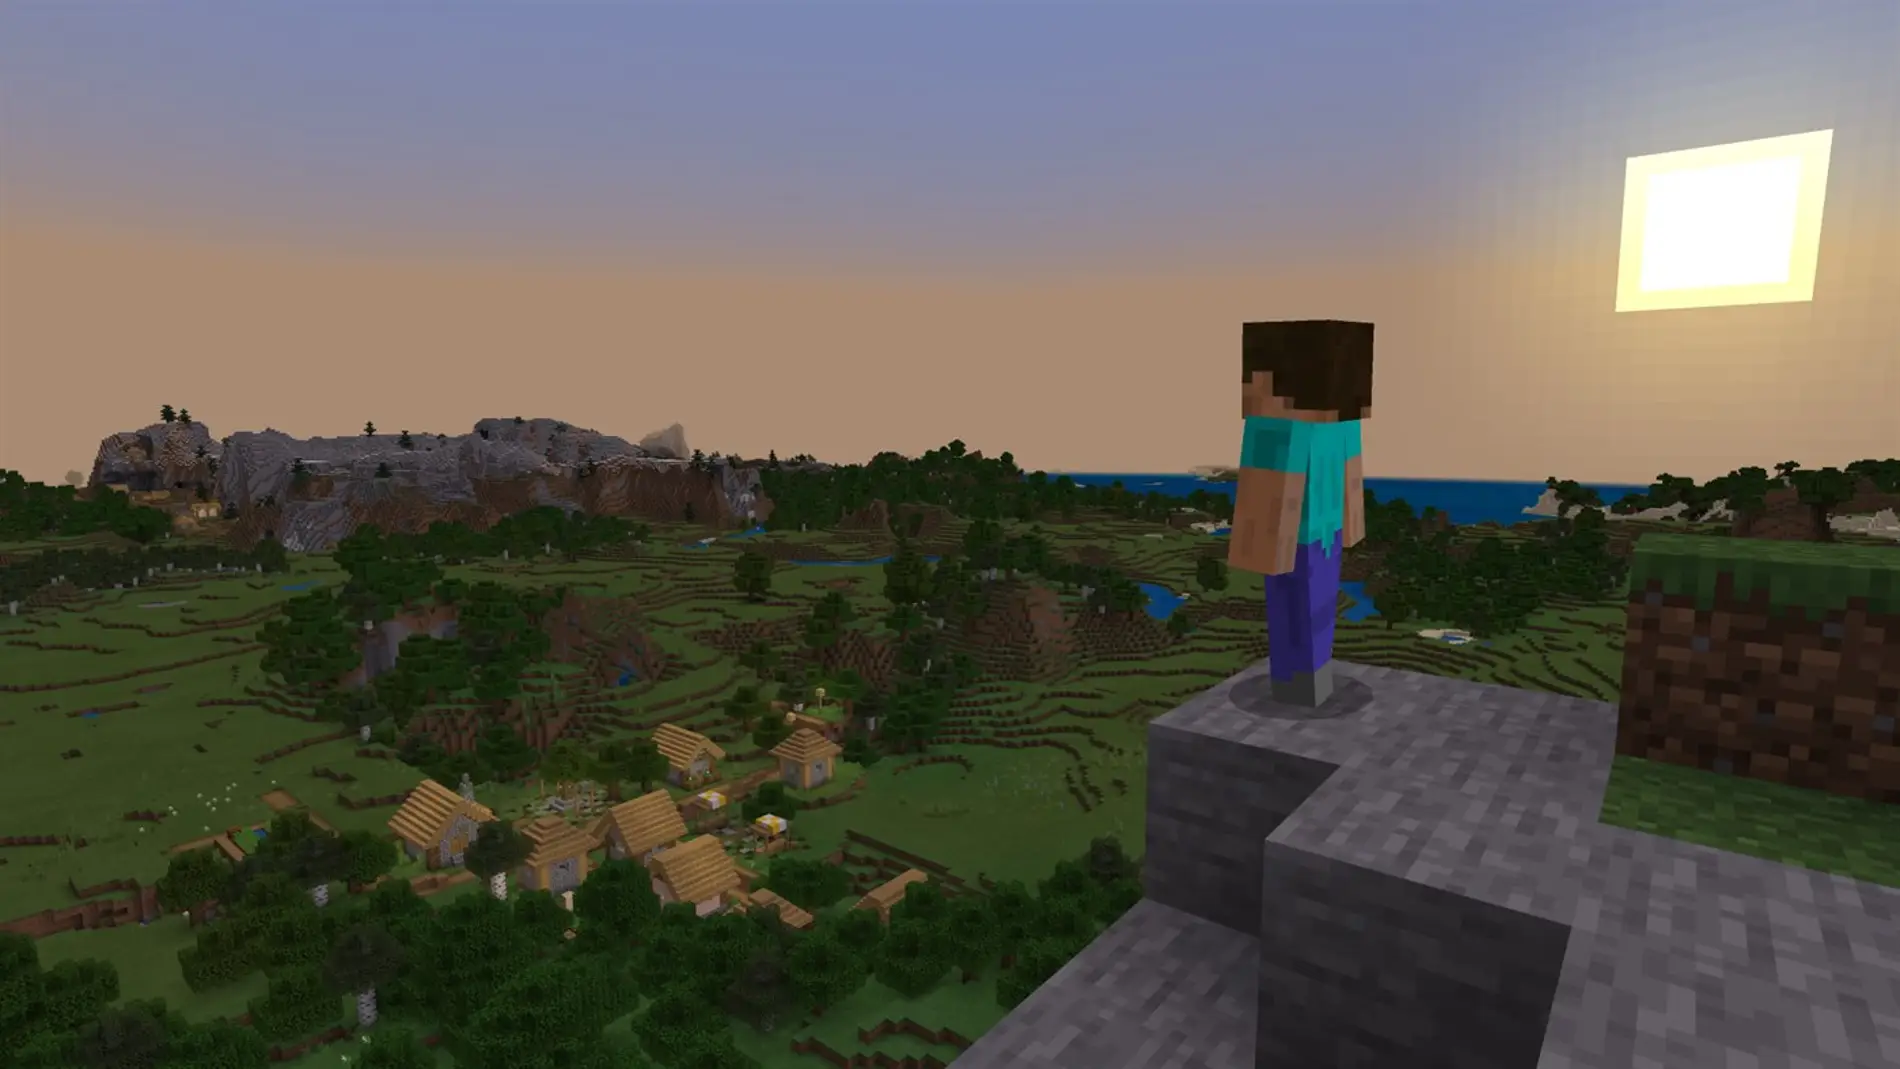 Lo nunca visto: construyen un pueblo al estilo Minecraft en la vida real